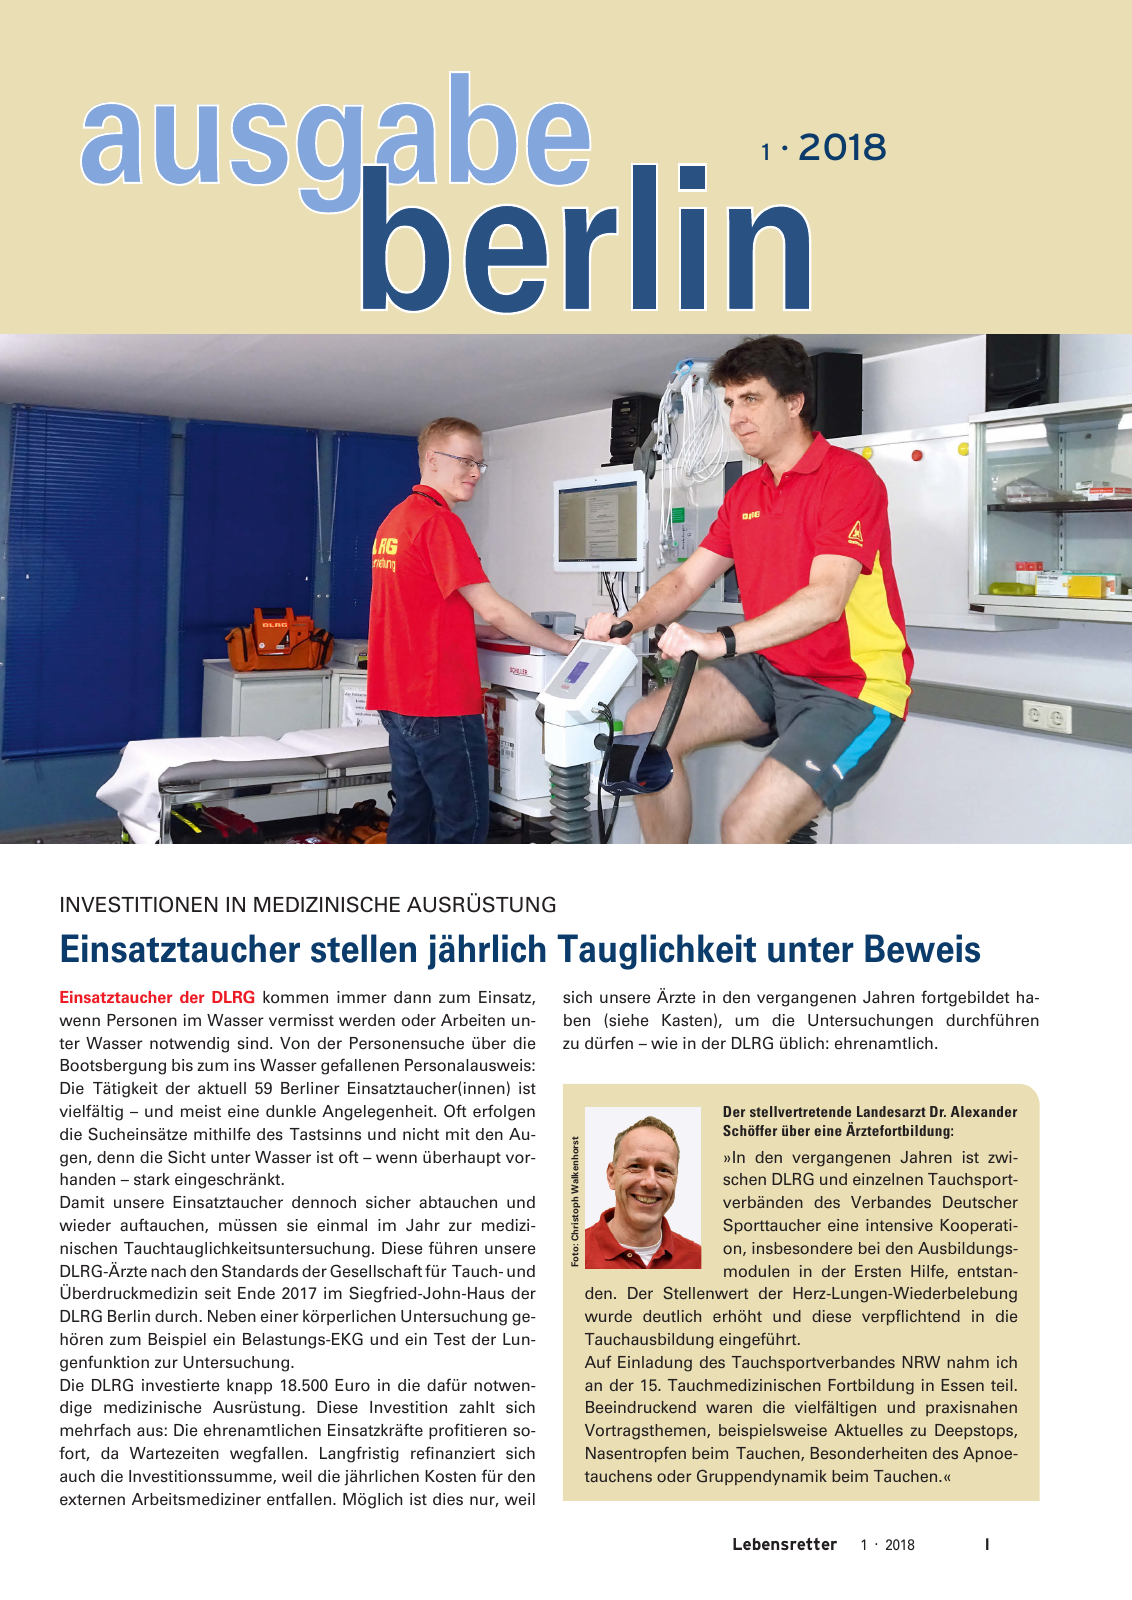 Vorschau Lebensretter 1/2018 - Regionalausgabe Berlin Seite 3